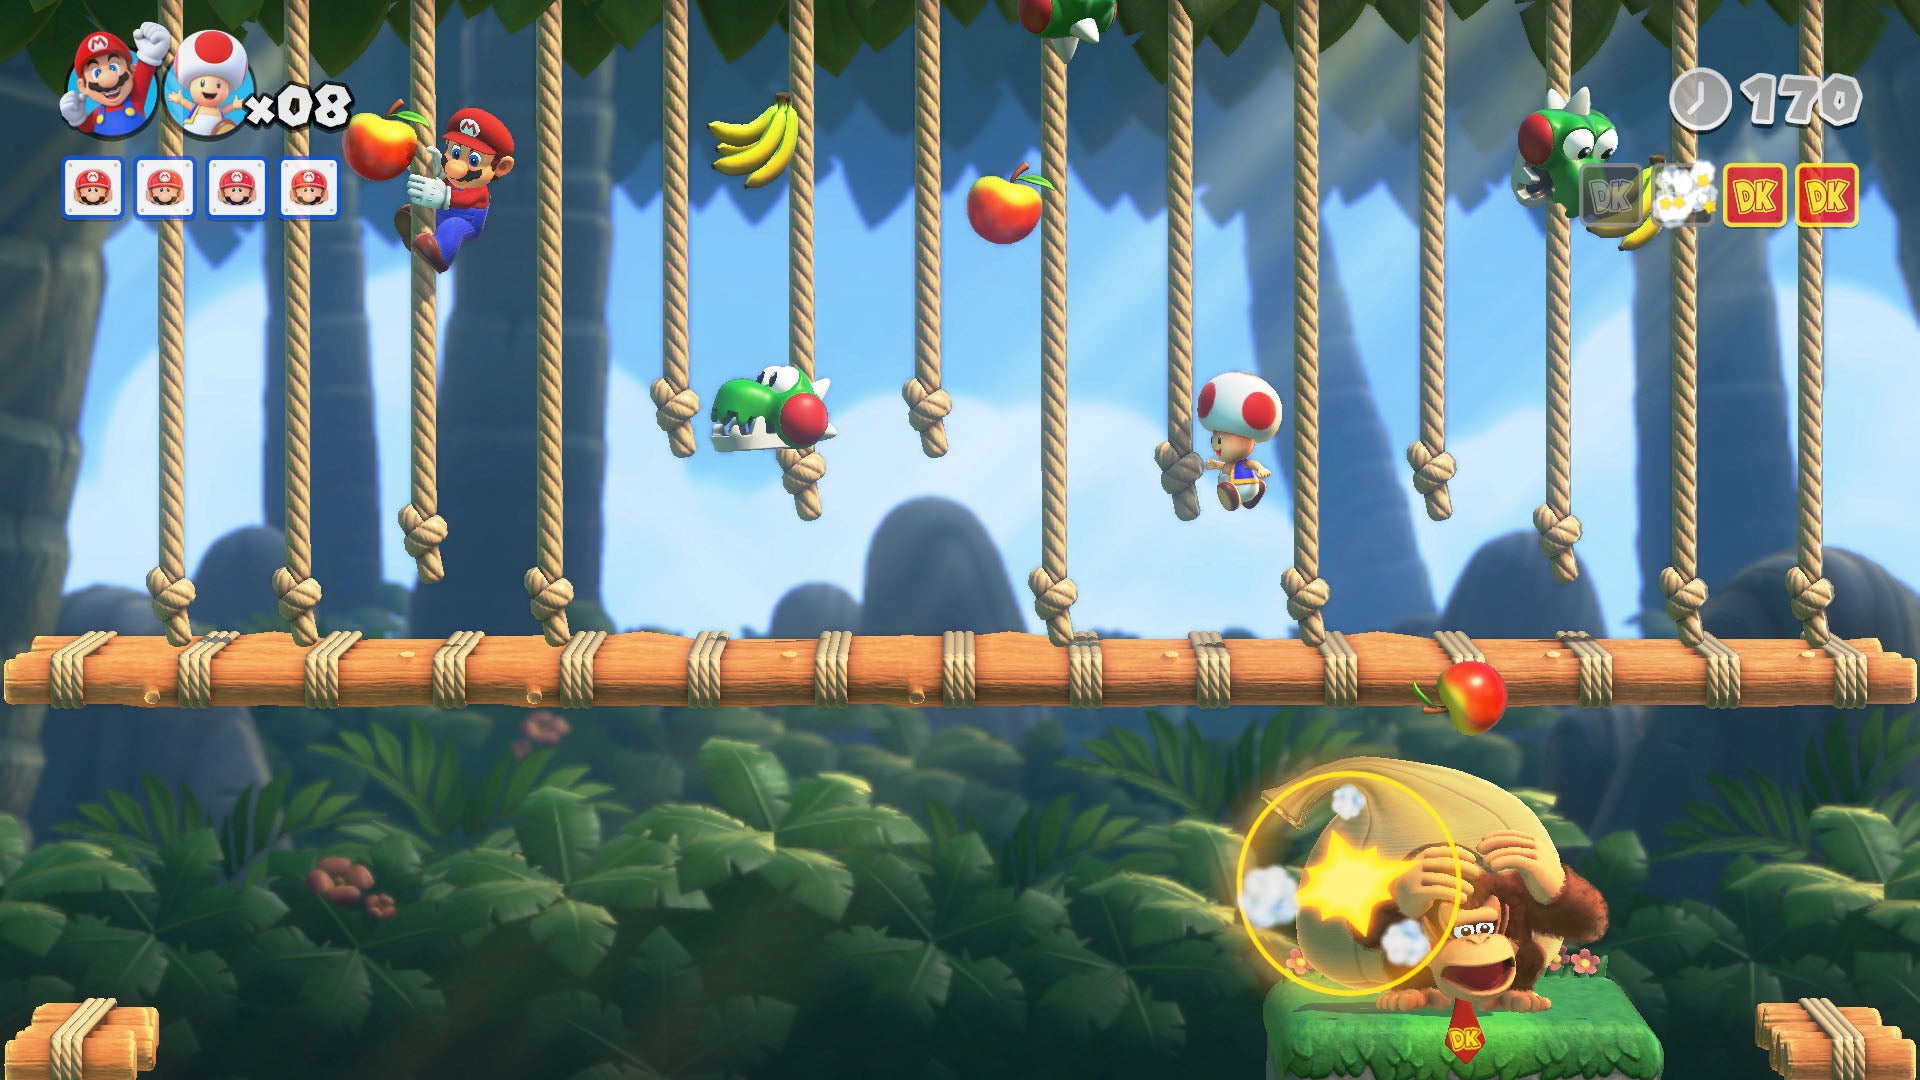 Il gioco laterale Mario vs. Donkey Kong. Qui, Mario si arrampica su una serie di corde in un livello della giungla, mentre sotto Donkey Kong si nasconde, per qualche motivo. Forse Mario sta lanciando cose, cosa che non è molto carina da parte sua.